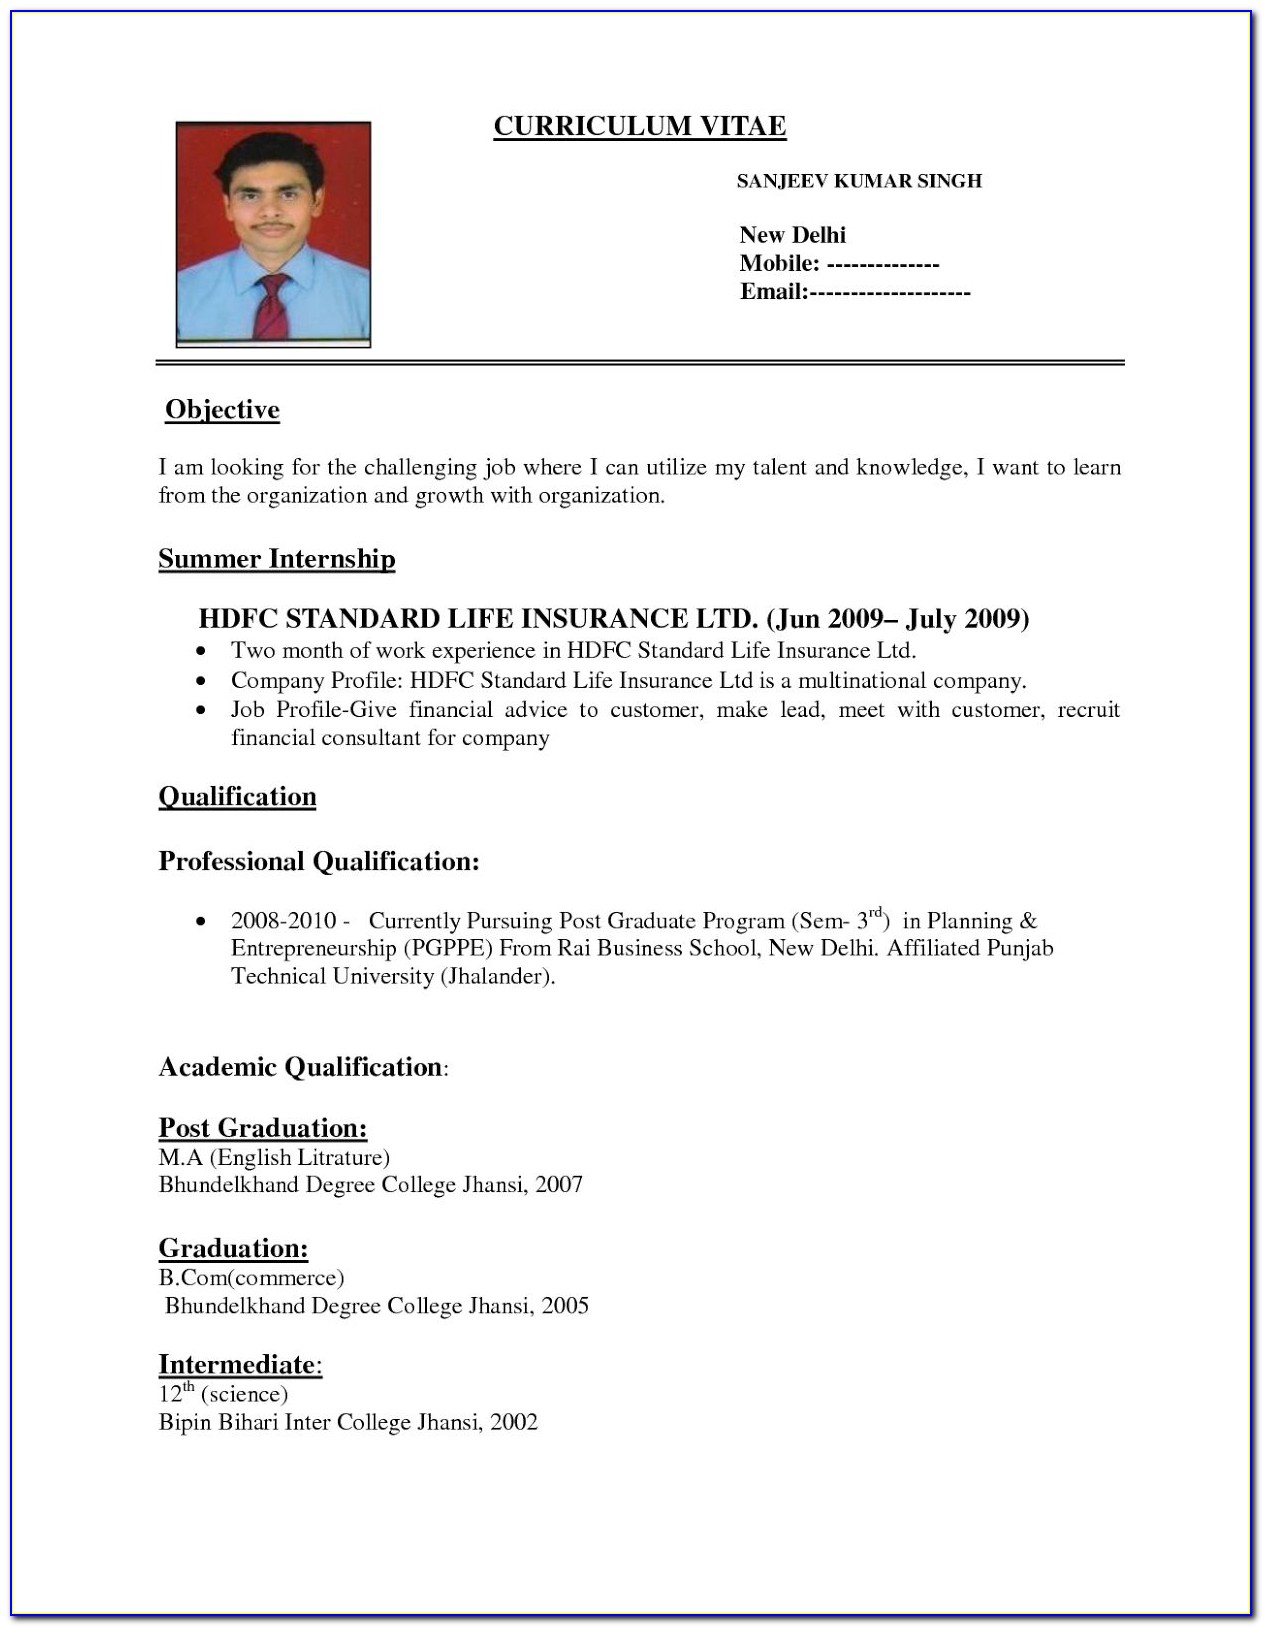 Curriculum Vitae Resume Template Download